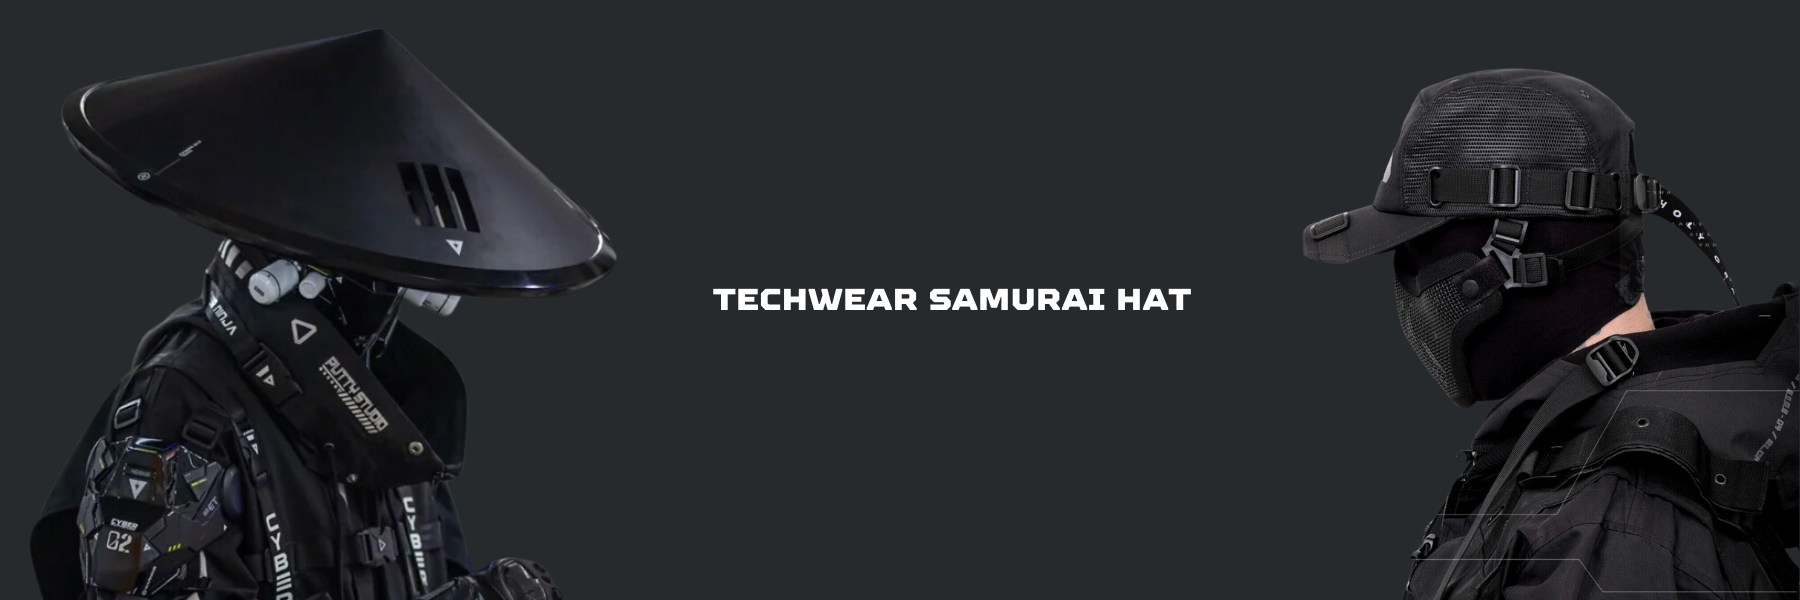 techwear samurai hat